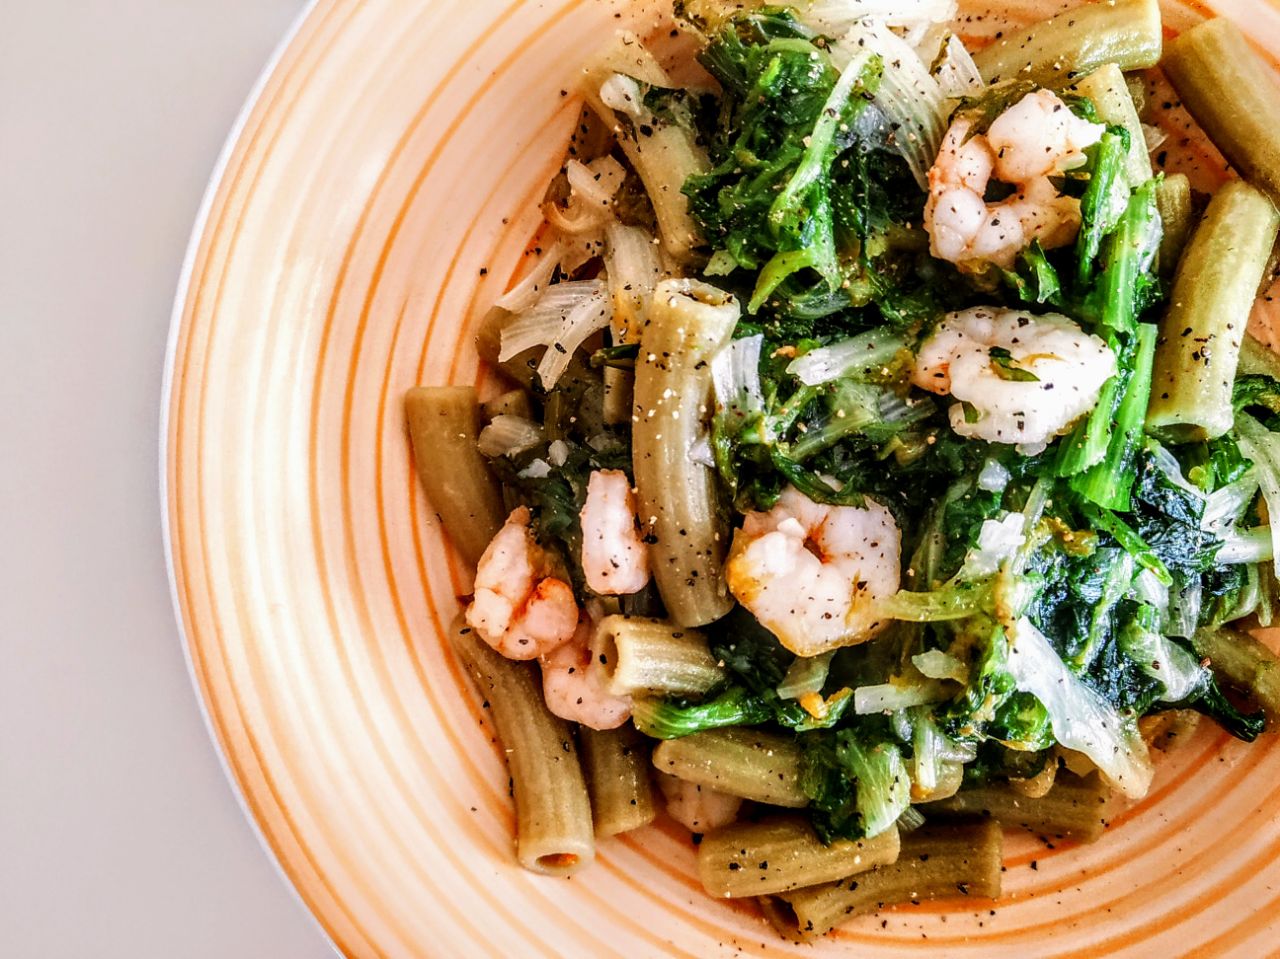 Primi piatti a base di pesce senza glutine: pasta di piselli verdi con gamberetti indivia riccia e olio evo!